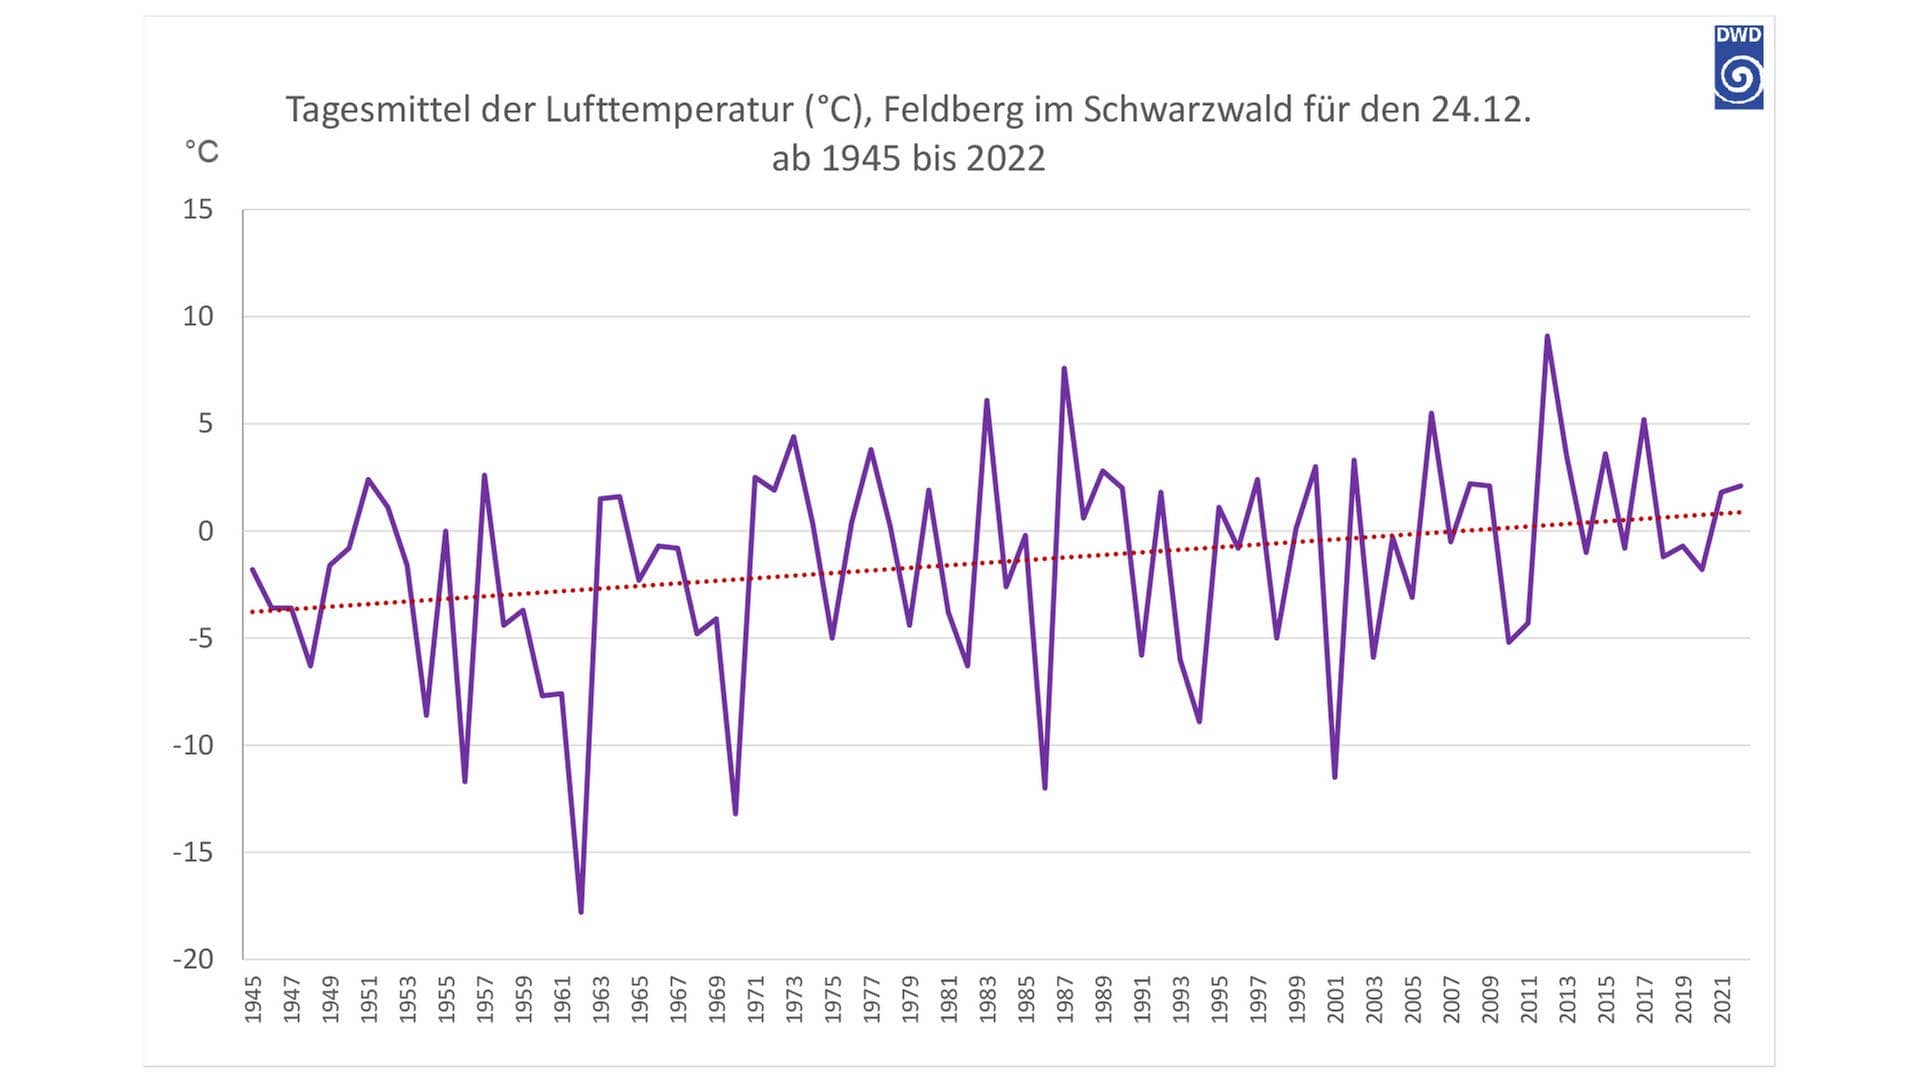 Tagesmittel der Lufttemperatur (°C), Feldberg für den 24.12. ab 1945 bis 2022